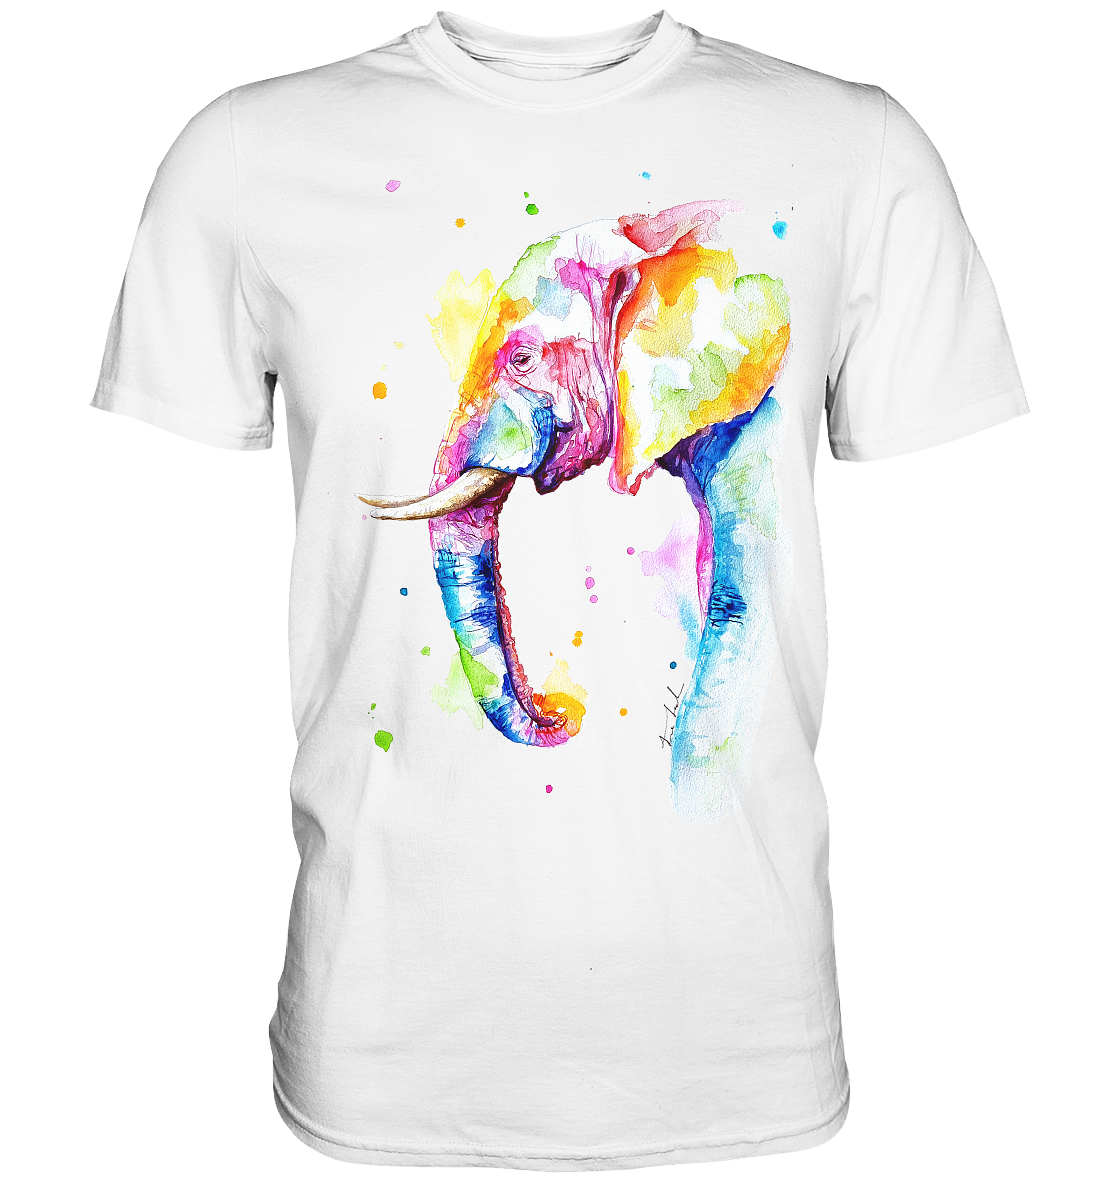 Bunter Elefant - Premium Shirt